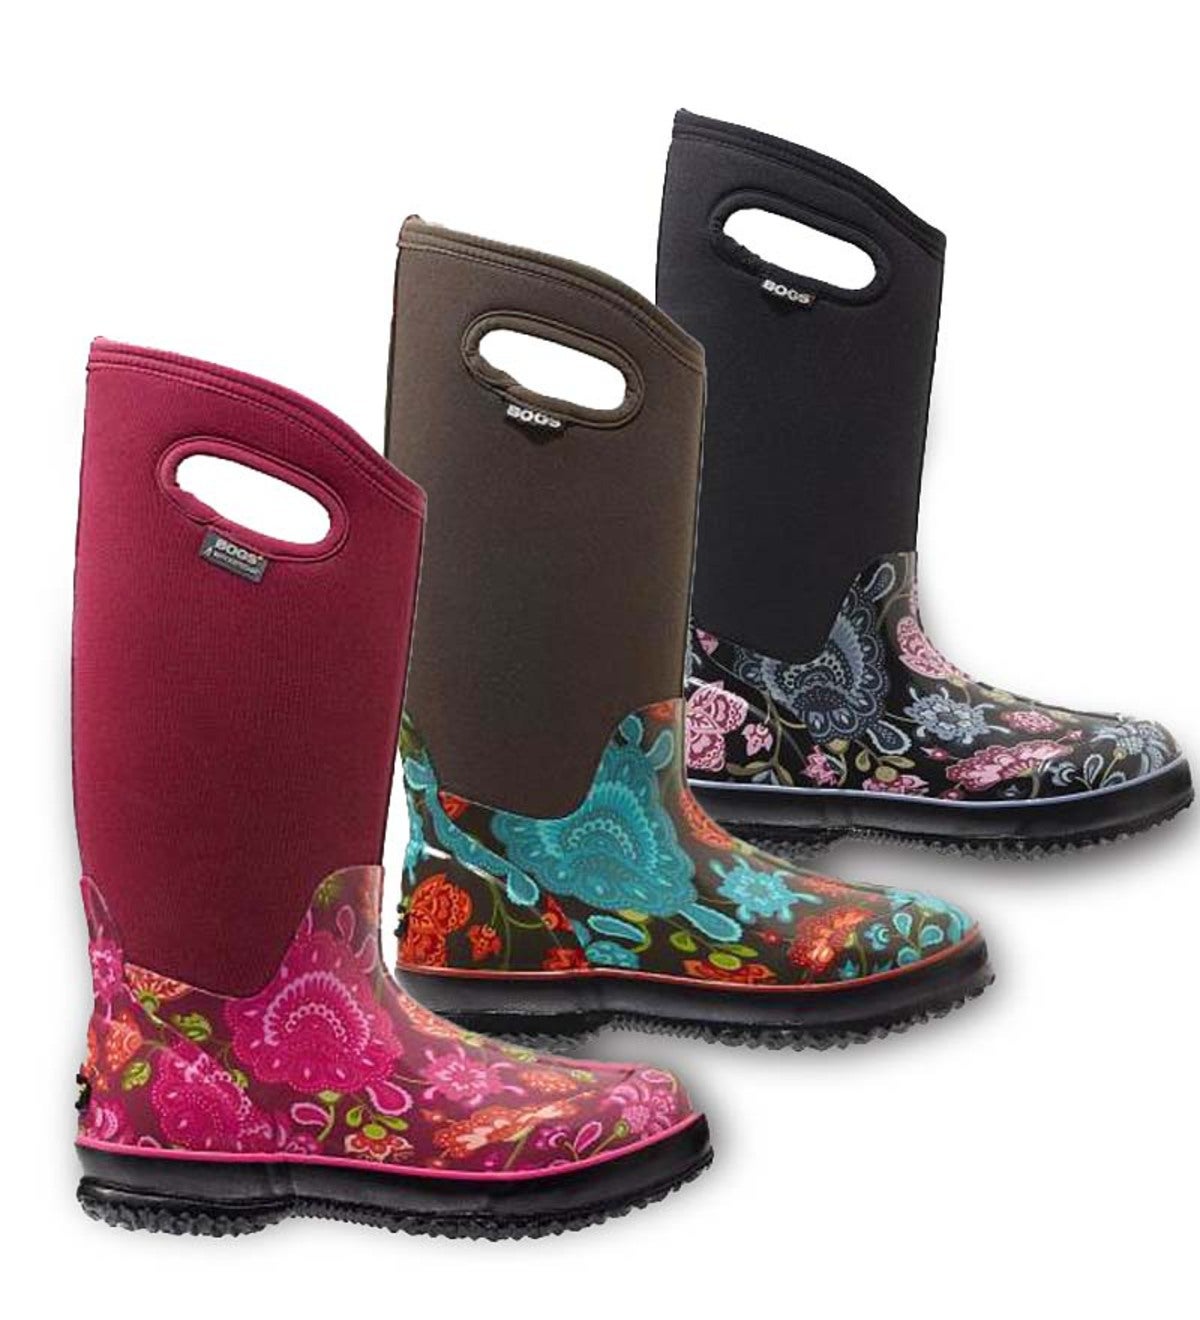 bogs women's tall boots